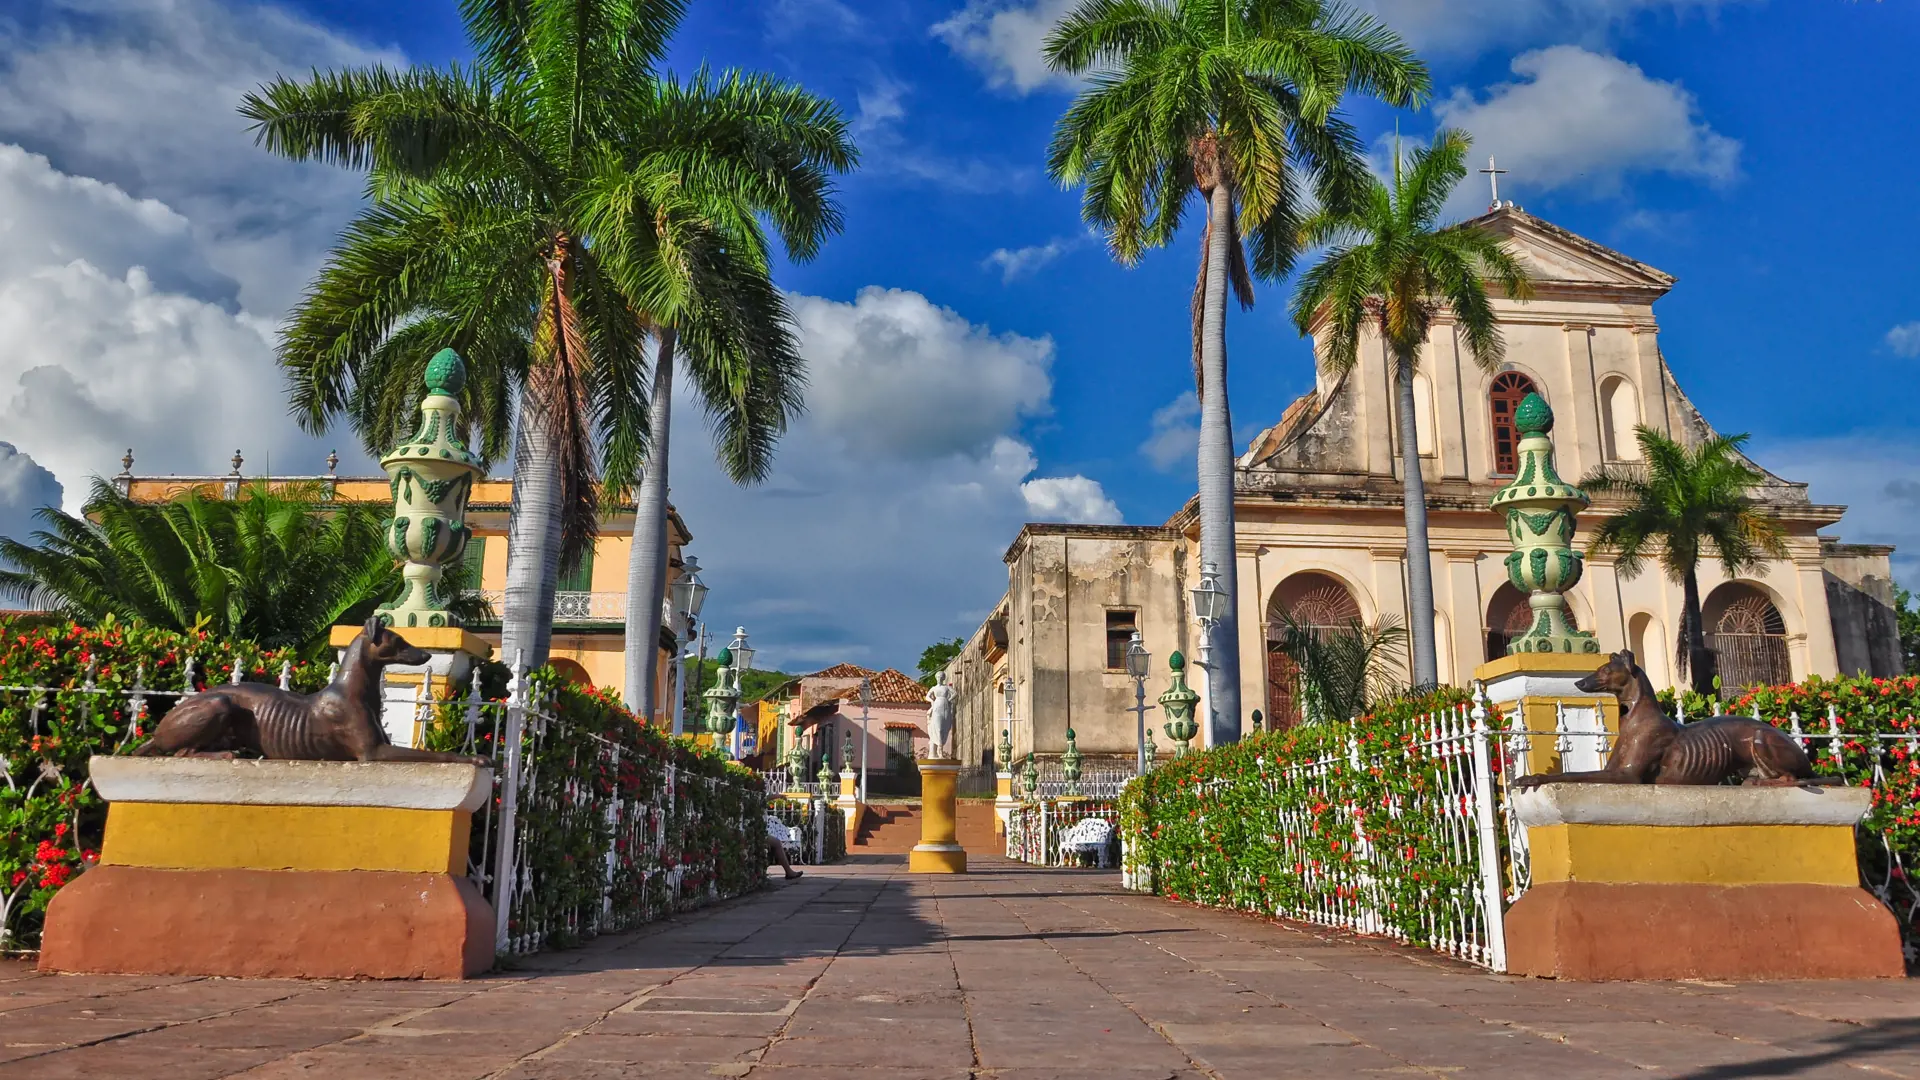 Trinidad - Cubas måske smukkeste by rummer spor fra den spanske kolonitid